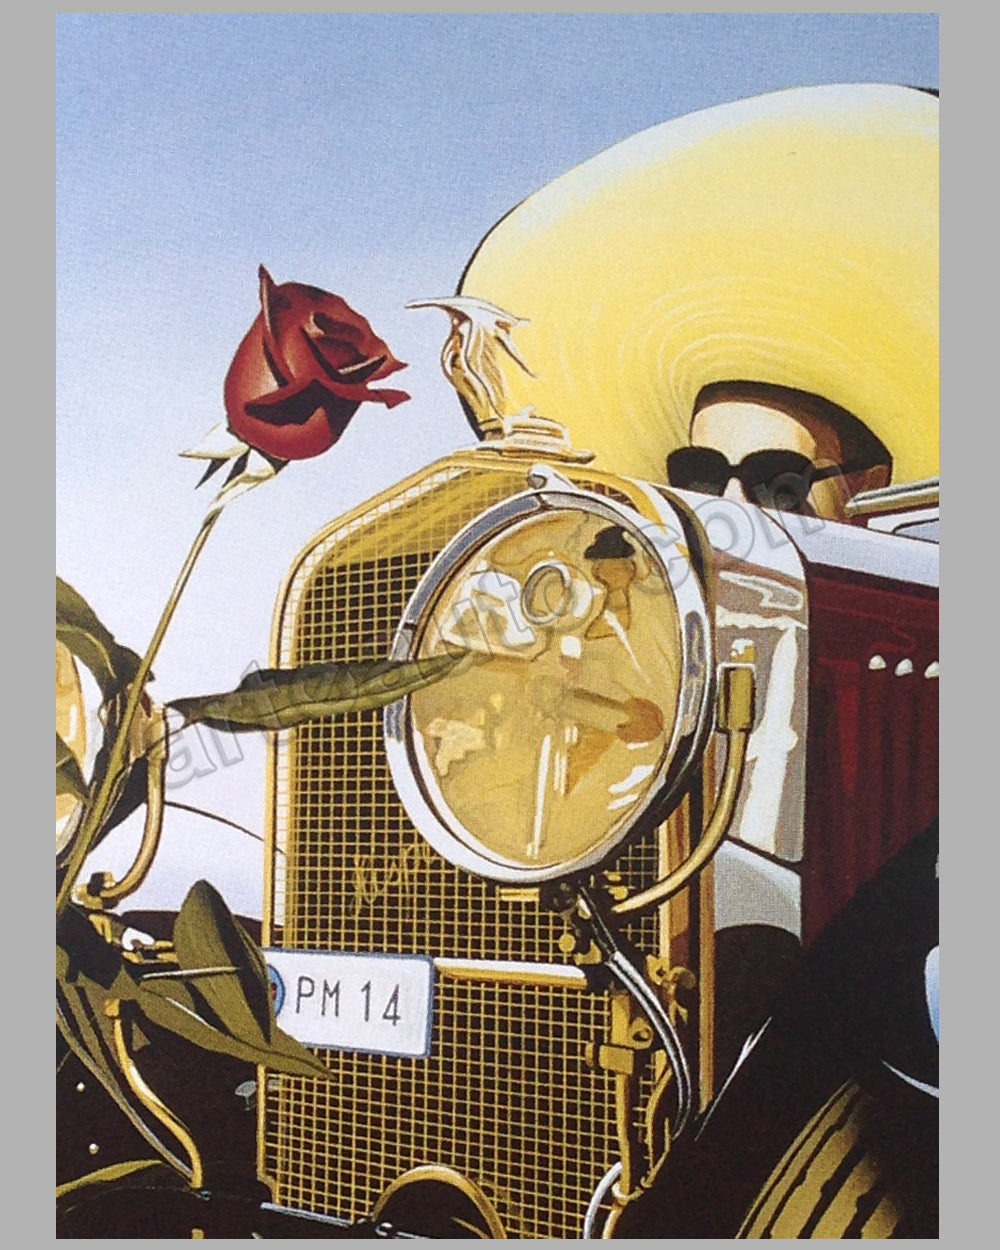 Louis Vuitton Bagatelle 1993 Concours d'Elegance large Razzia poster -  l'art et l'automobile